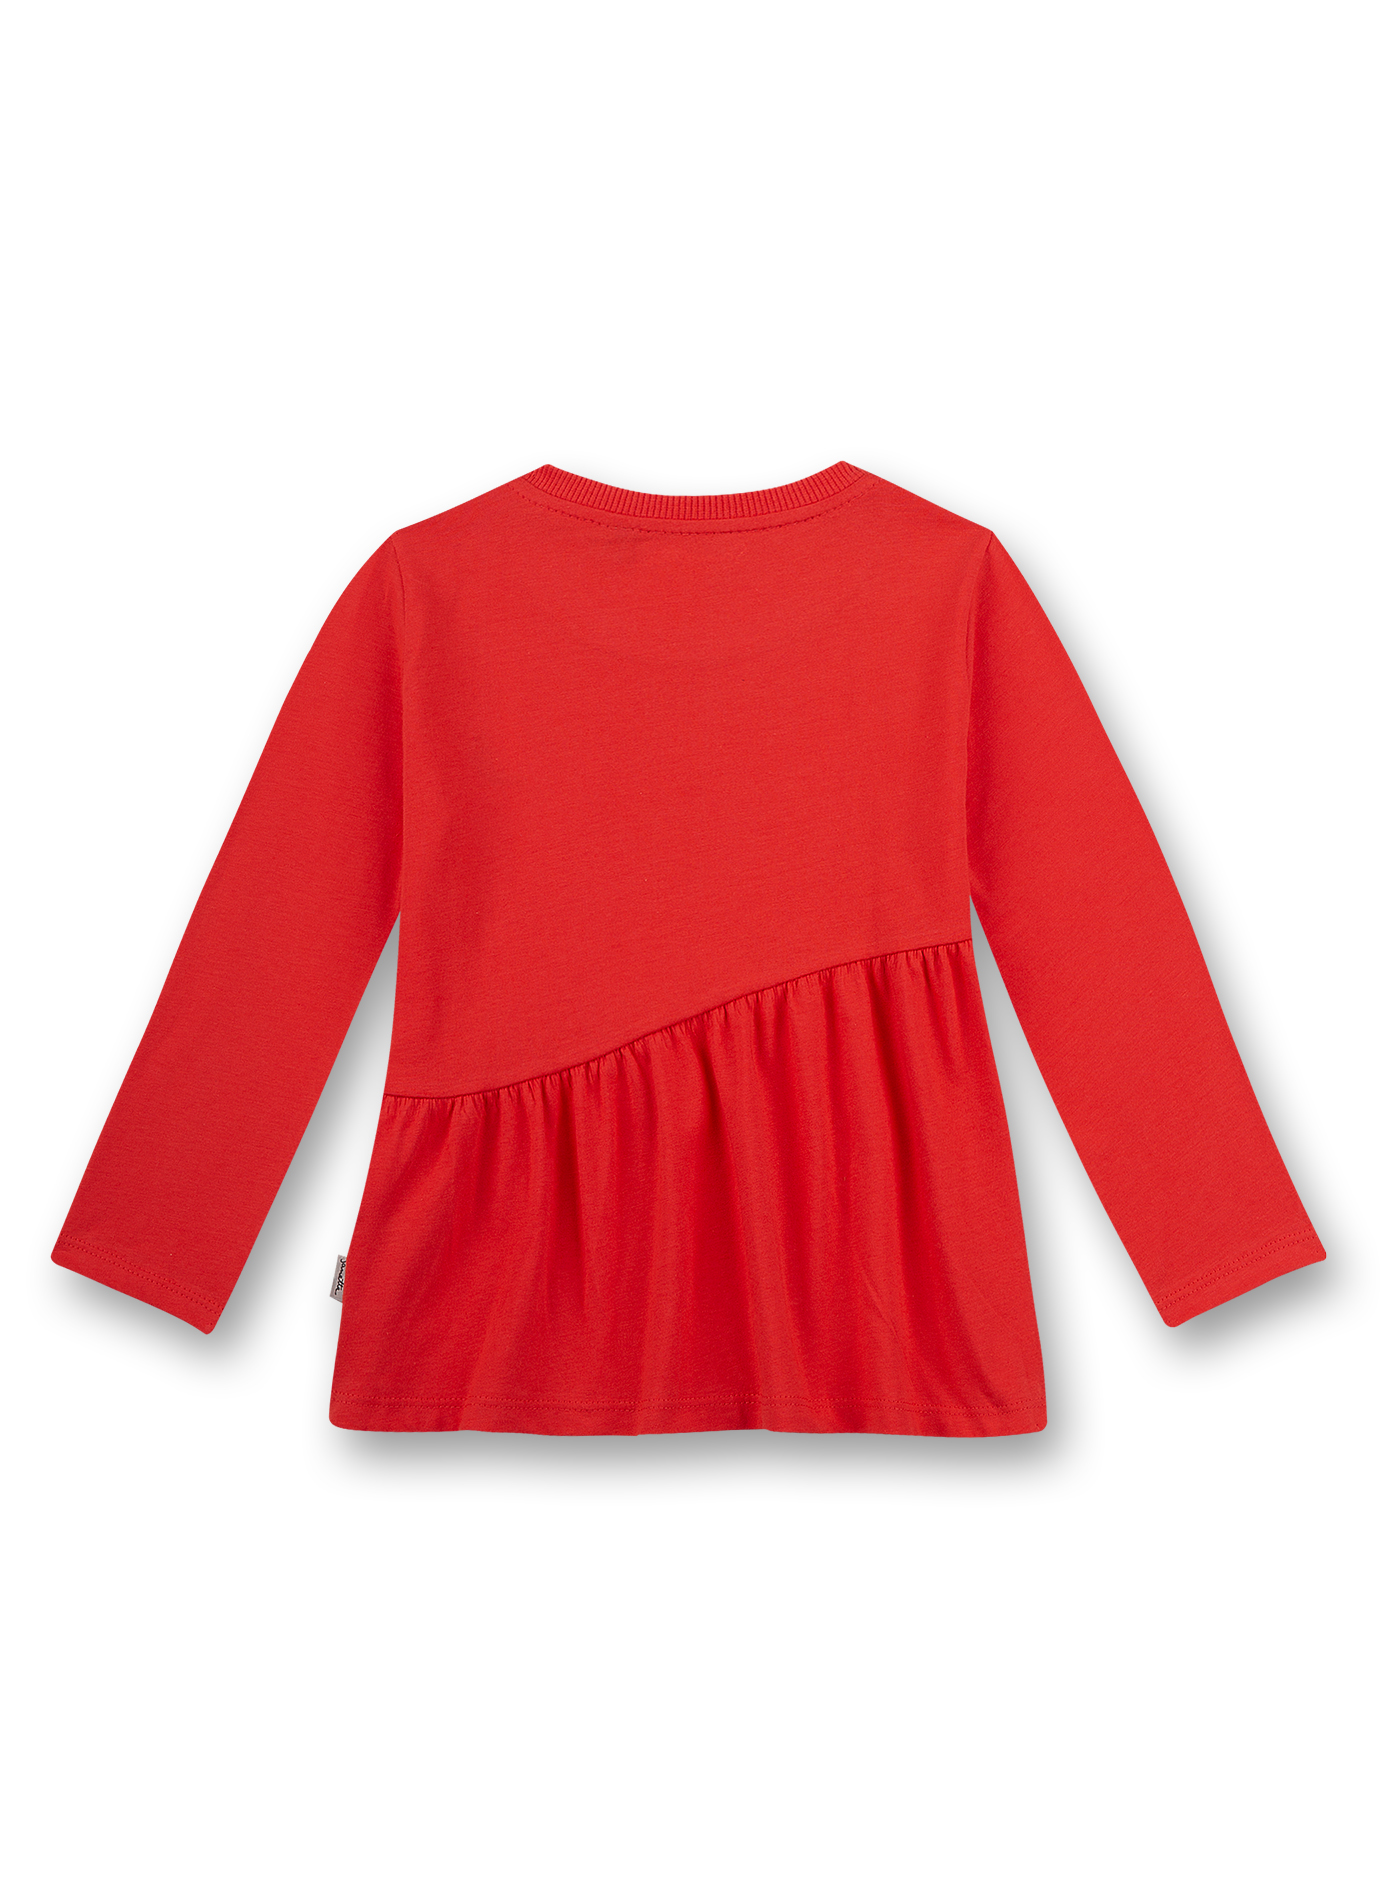 Mädchen-Shirt langarm Rot Pepperoni